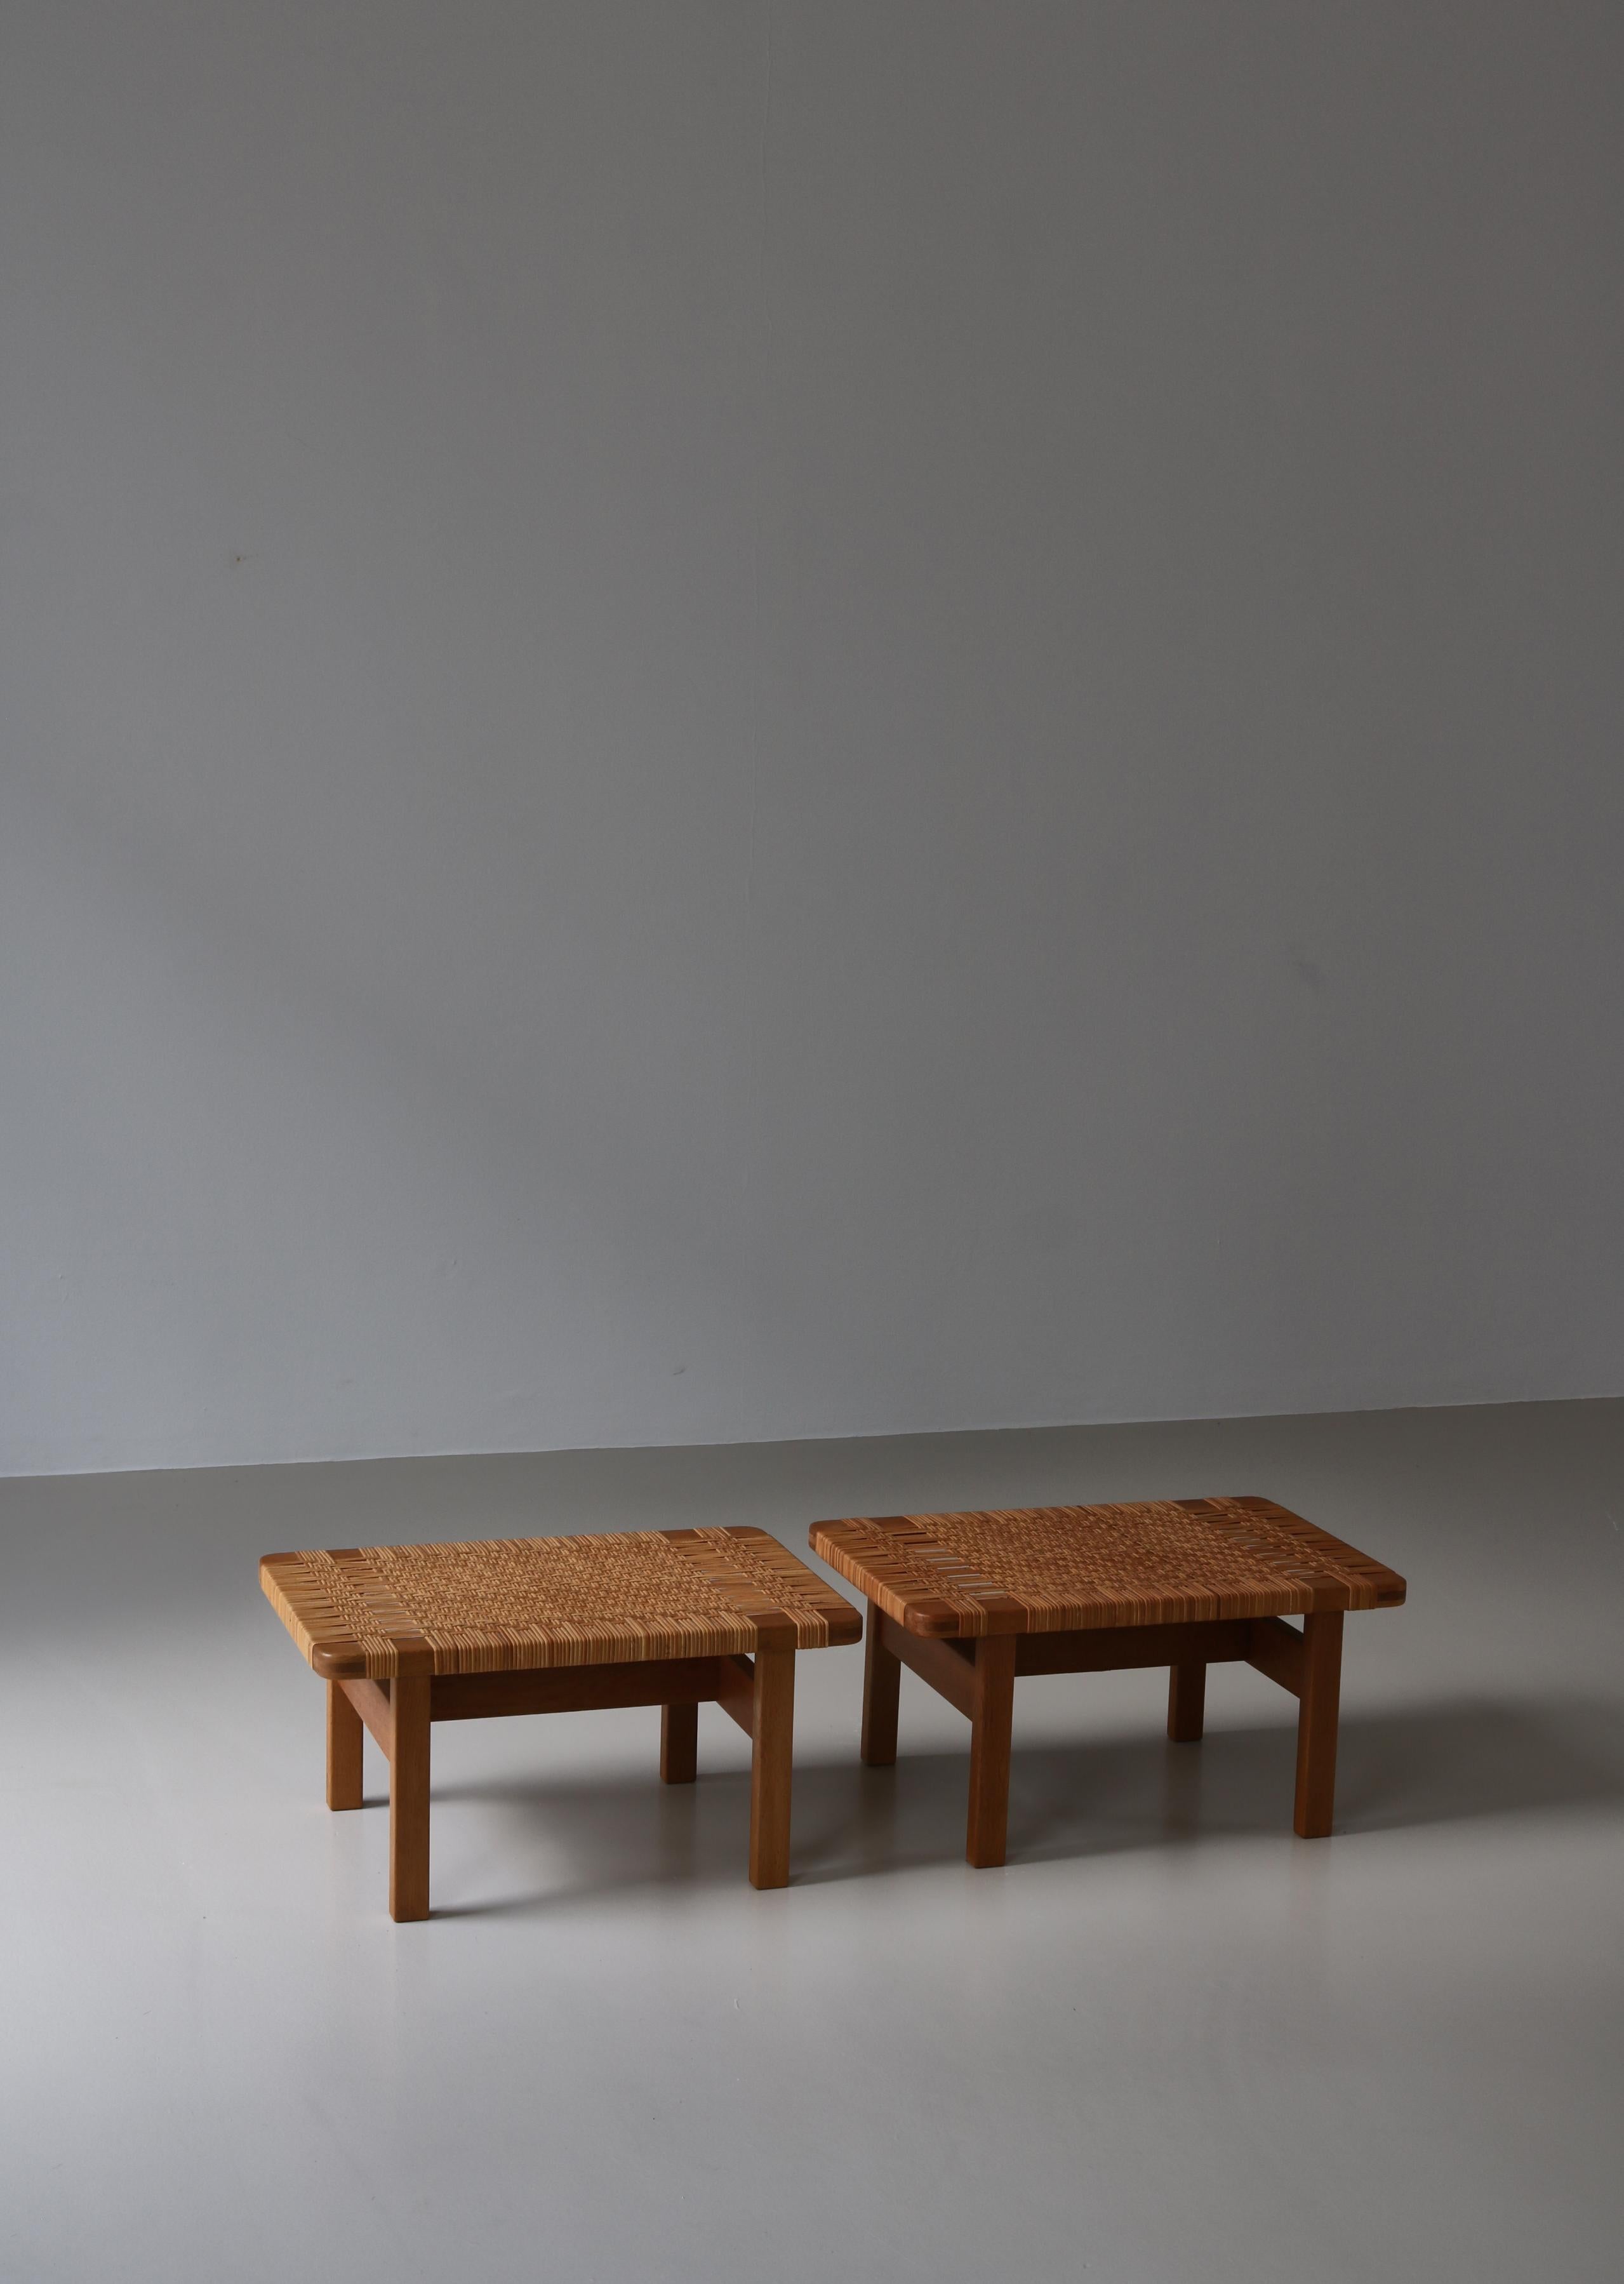 Superbe ensemble de tables d'appoint ou bancs modernes danois en chêne massif et rotin tressé à la main par l'architecte danois Borge Mogensen. Mogensen a conçu ce modèle dans les années 1950, alors qu'il était fabriqué en différentes tailles par